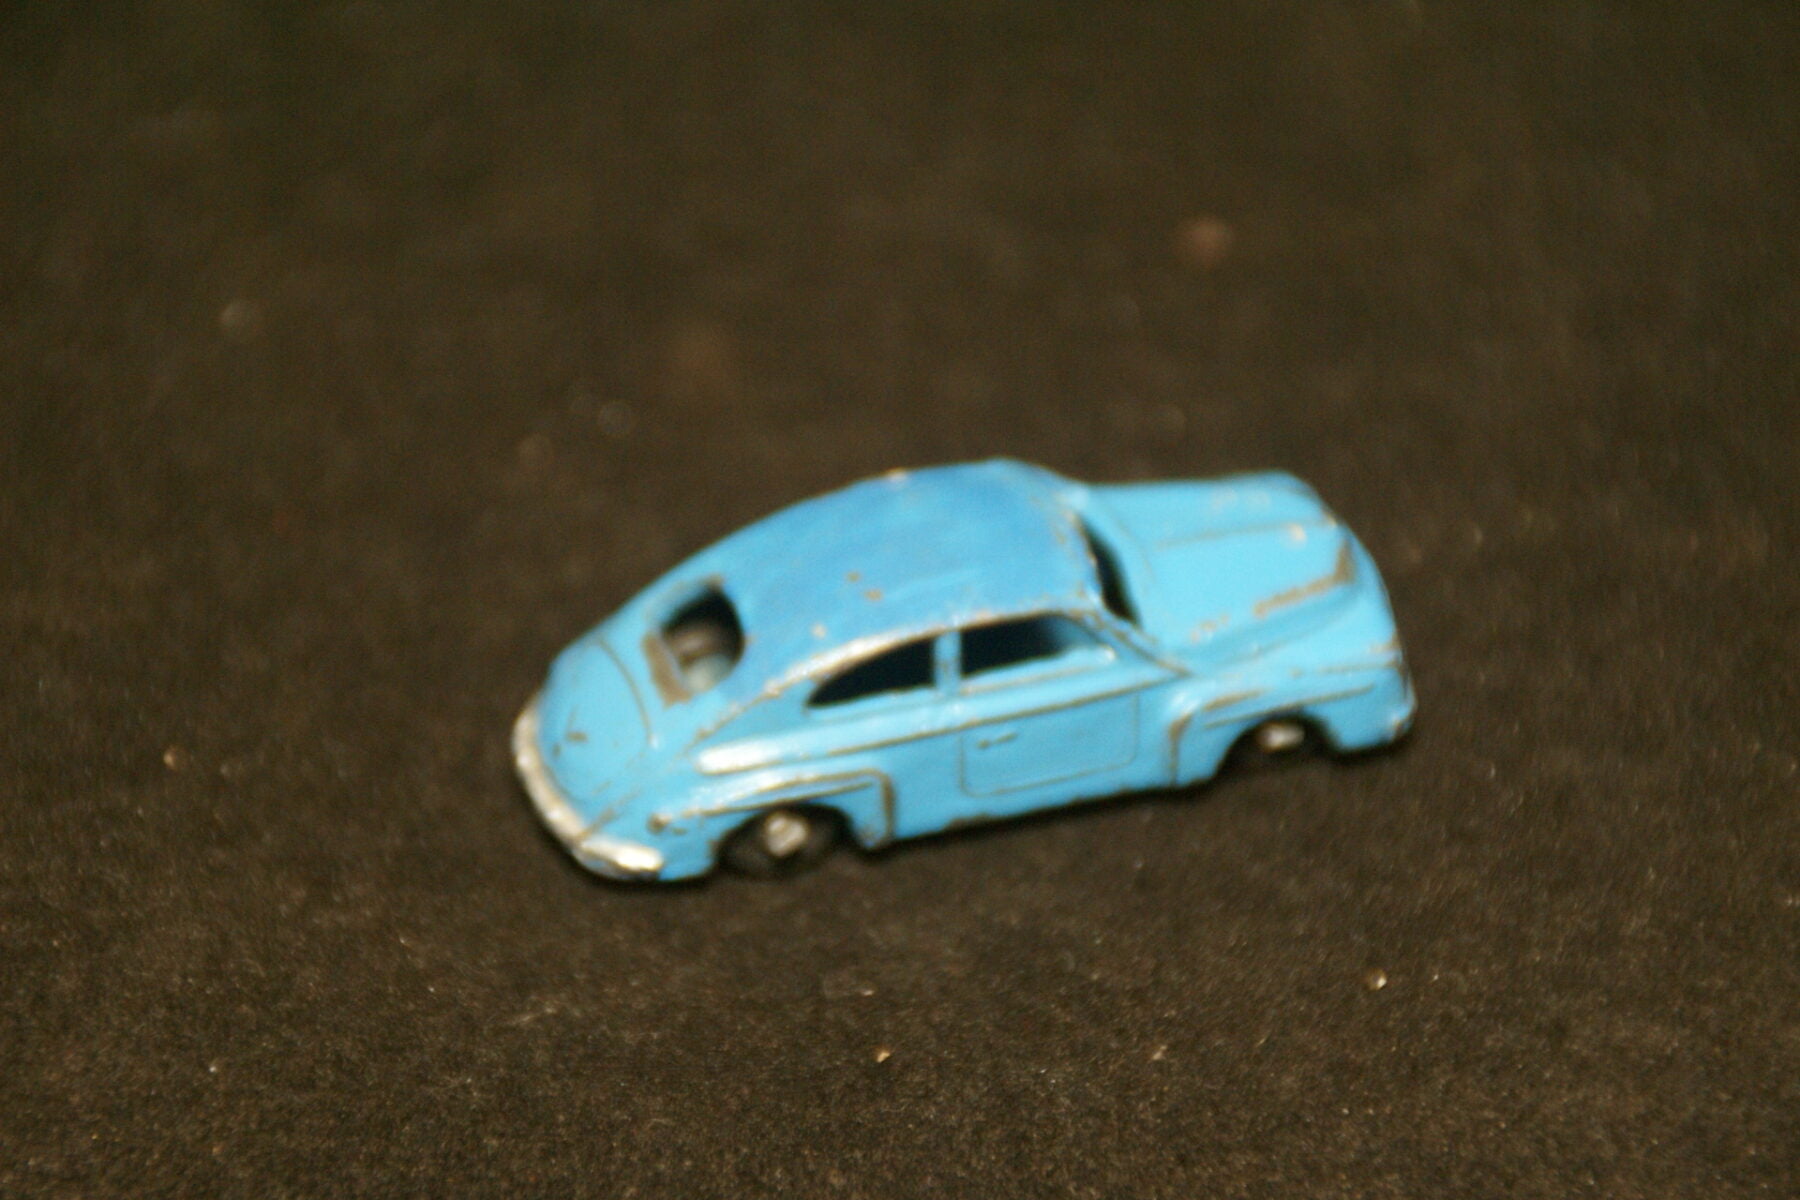 DSC08912 miniatuur Volvo katterug 544 blauw metaal Japan ca 1op87 zeldzaam! goede staat